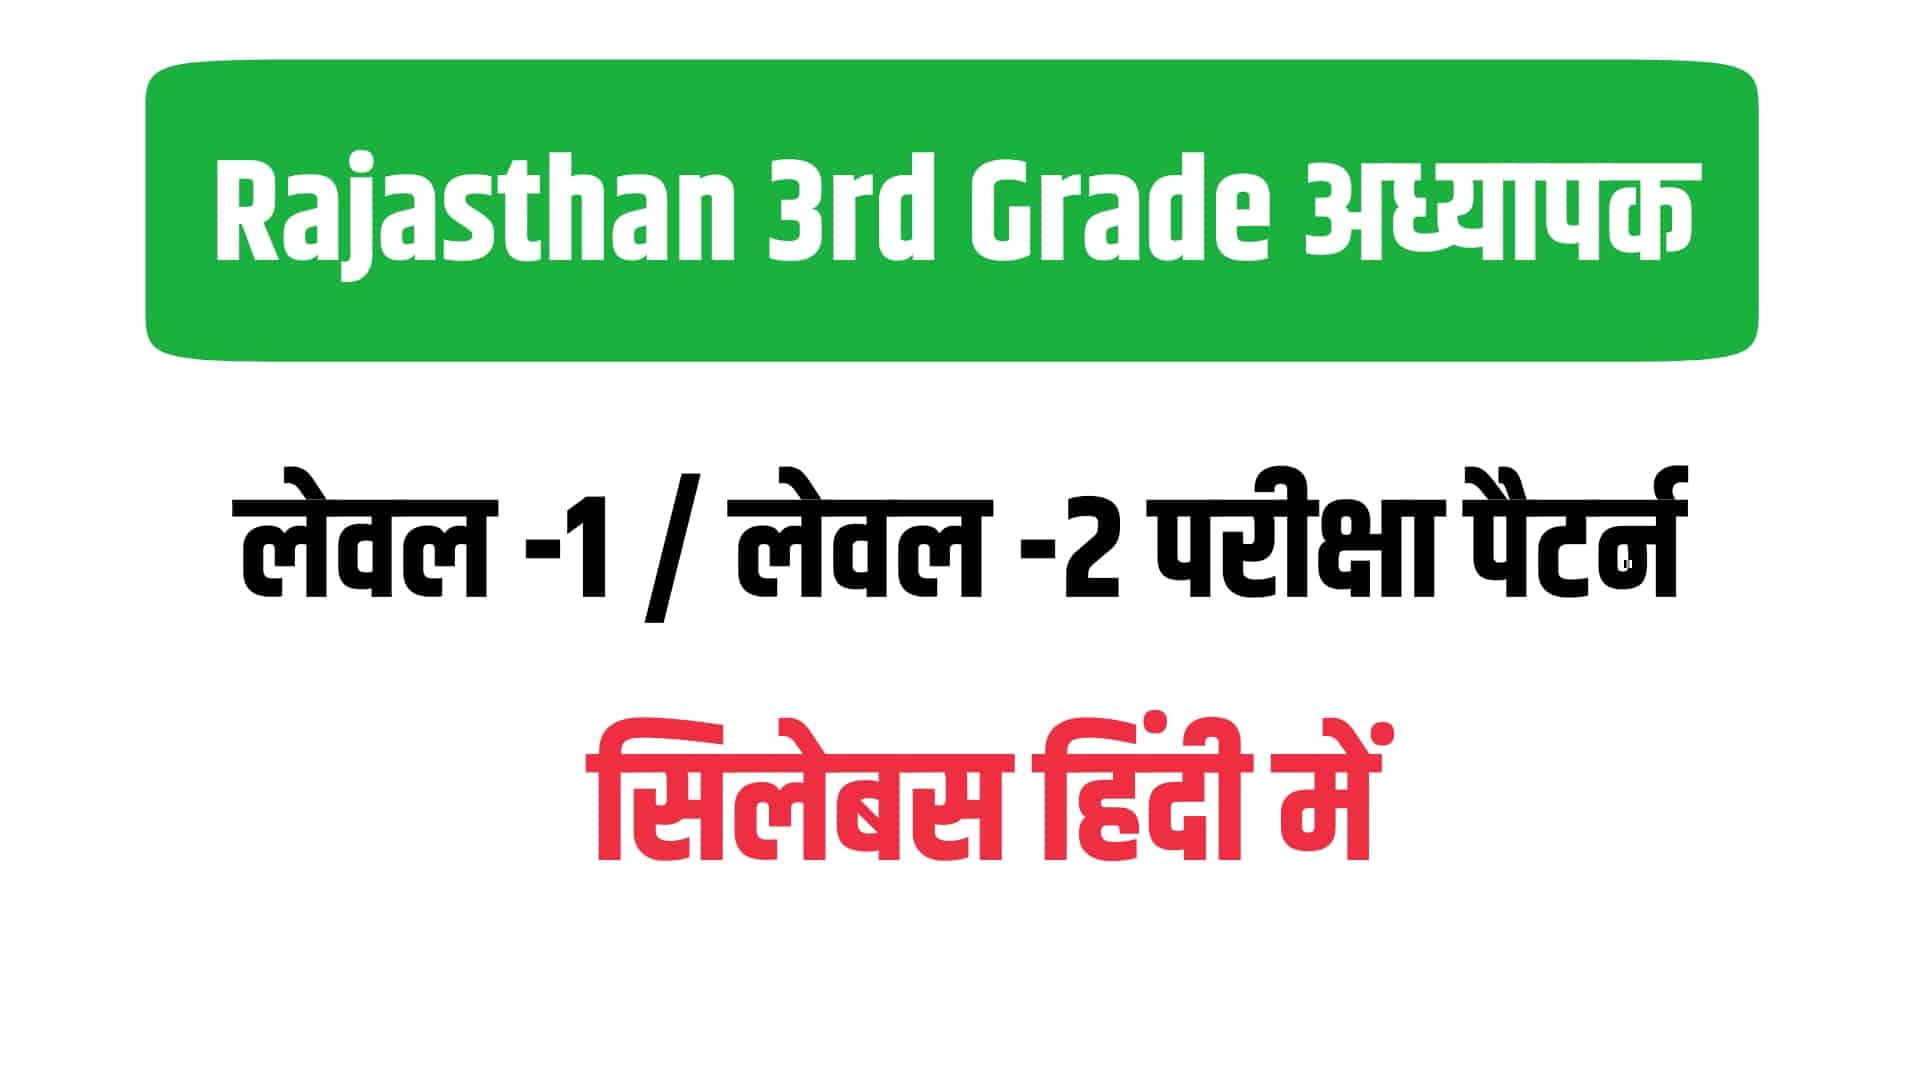 Rajasthan 3rd Grade Teacher Syllabus In Hindi - हिंदी में जानें राजस्थान तृतीय श्रेणी शिक्षक सिलेबस